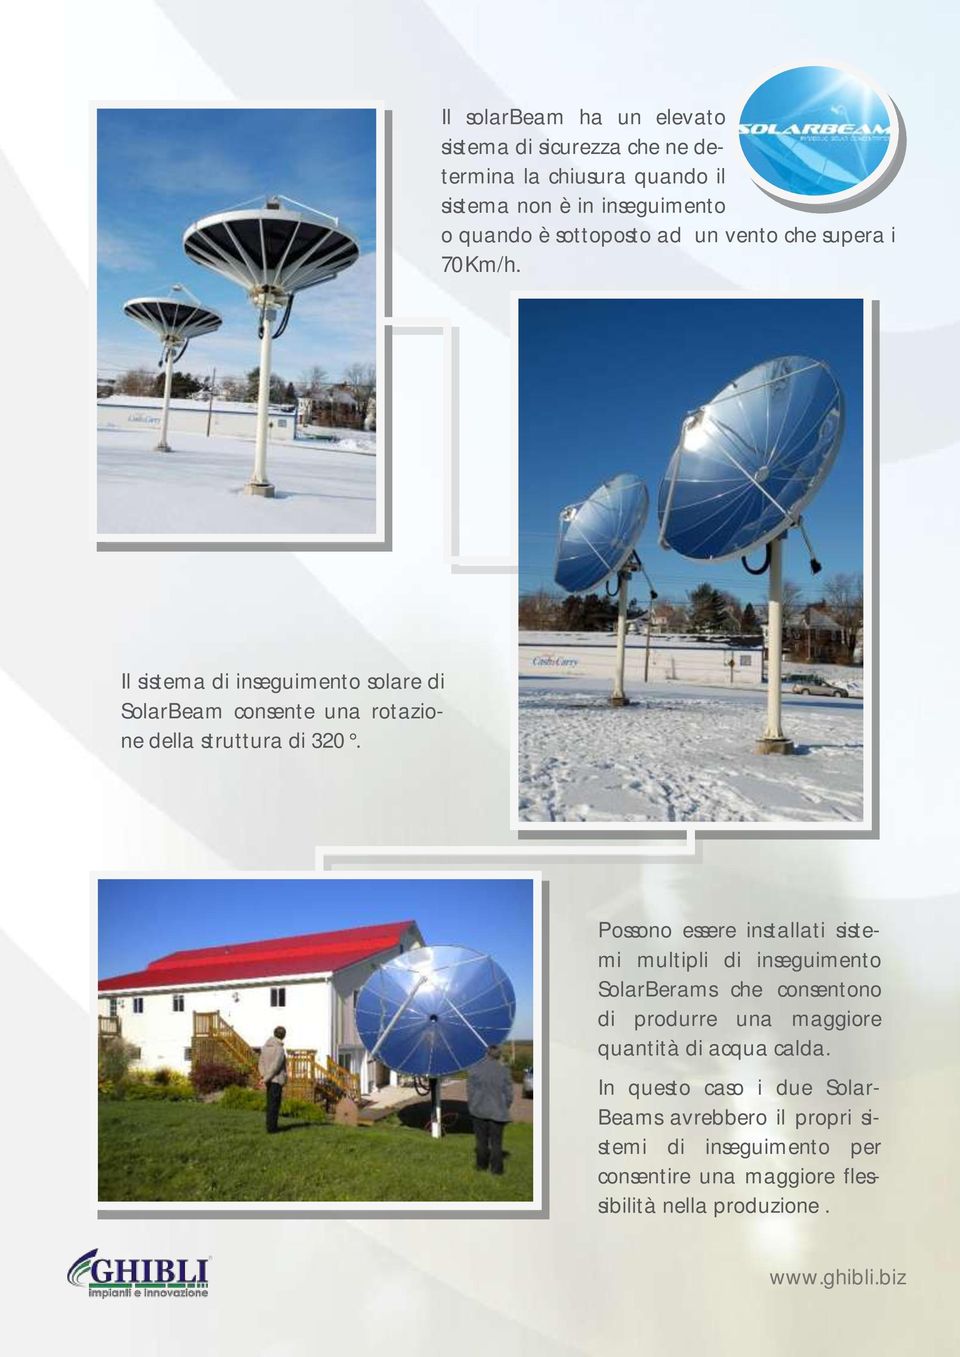 Il sistema di inseguimento solare di SolarBeam consente una rotazione della struttura di 320.